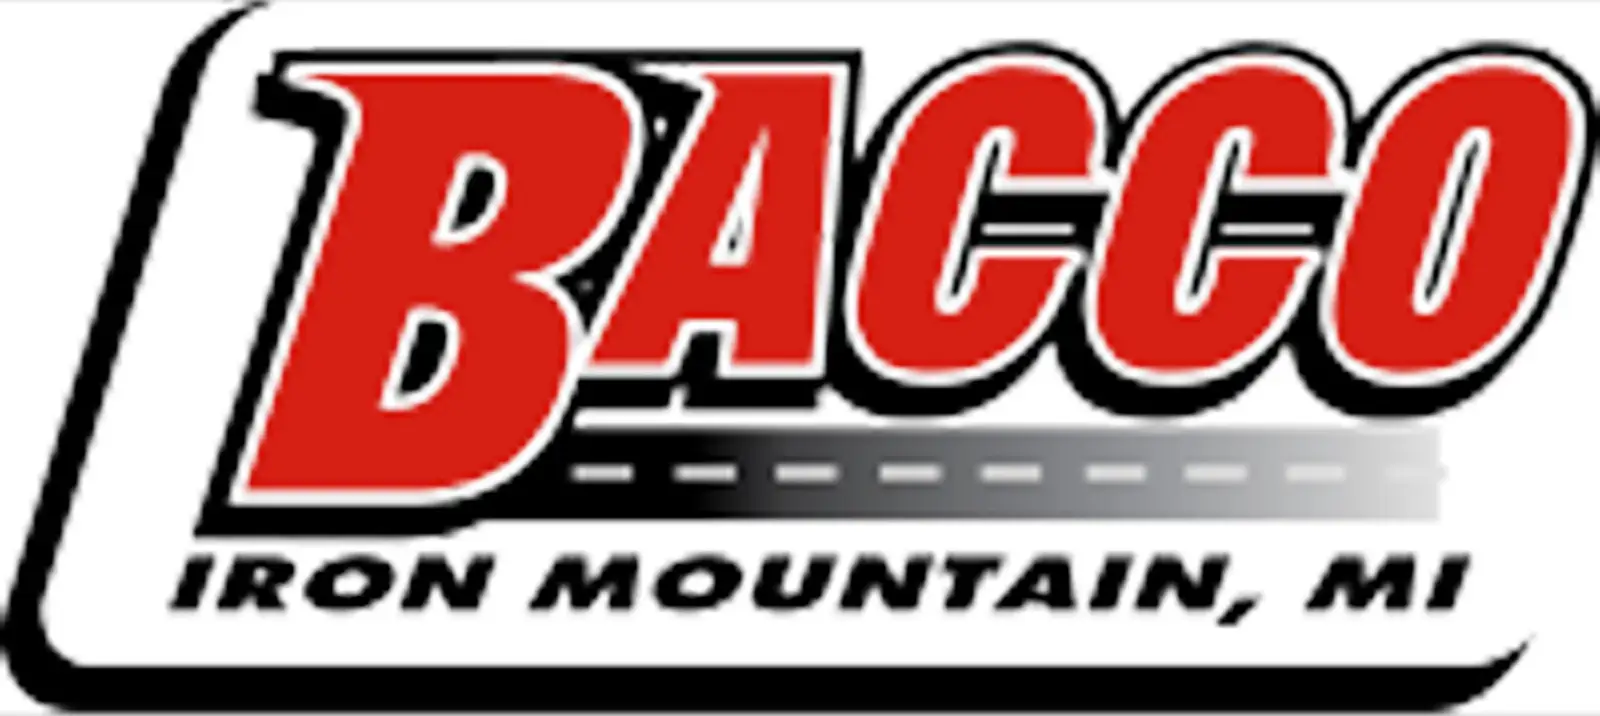 Bacco Construction Company  logo